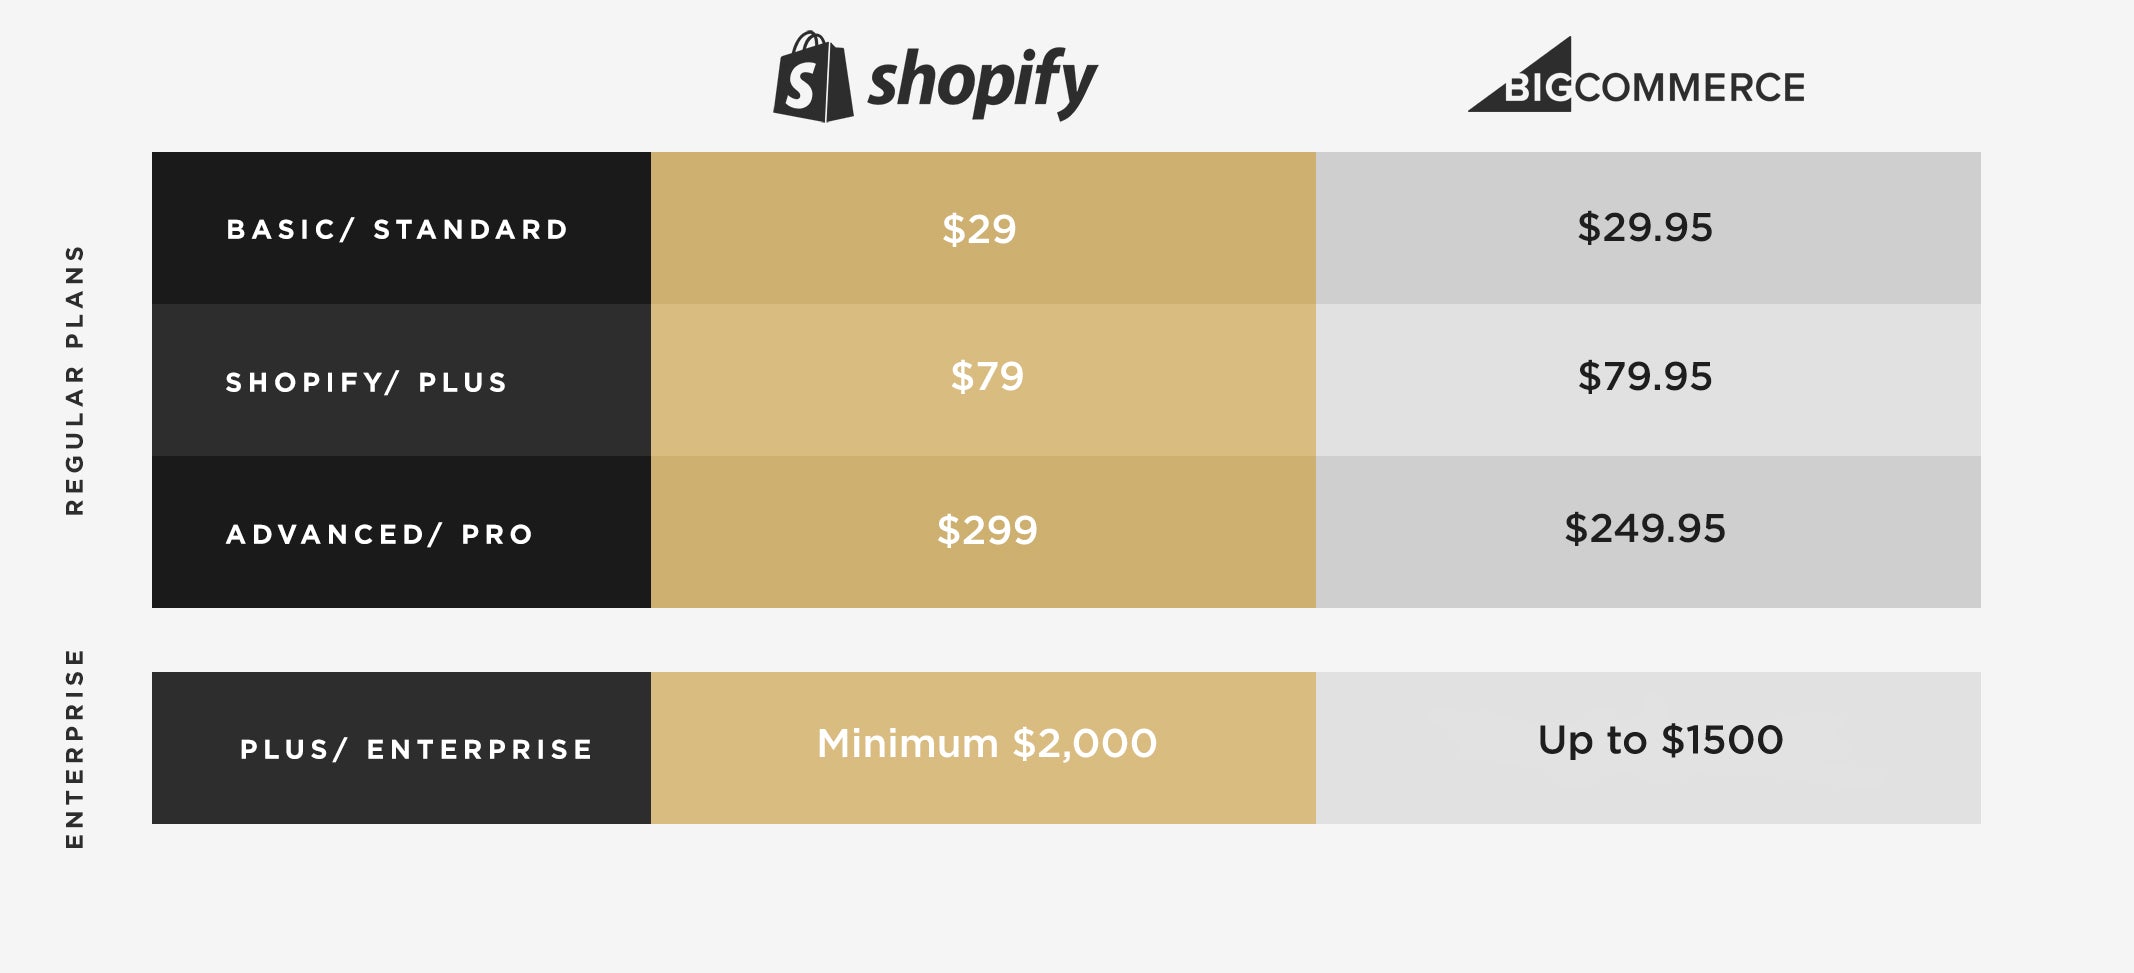 BigCommerce vs. Shopify